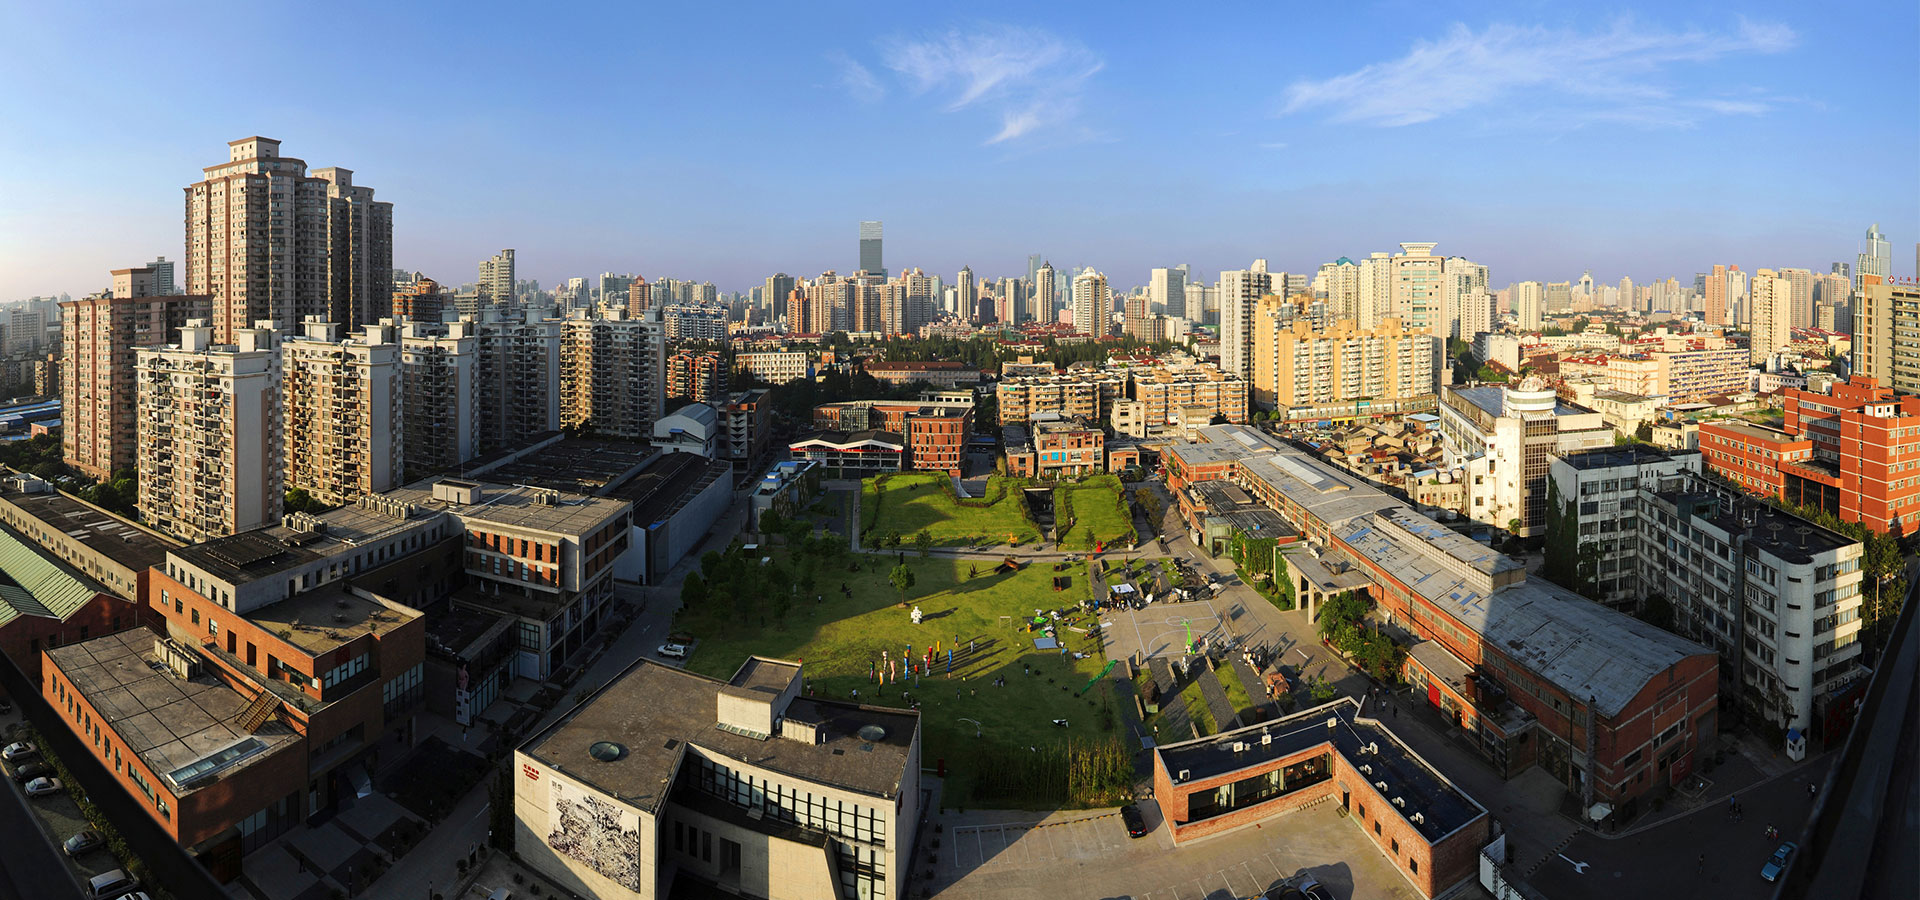 上海红坊创意园实景照片的图片浏览,园林项目照片,城市景观,园林景观设计施工图纸资料下载_定鼎园林